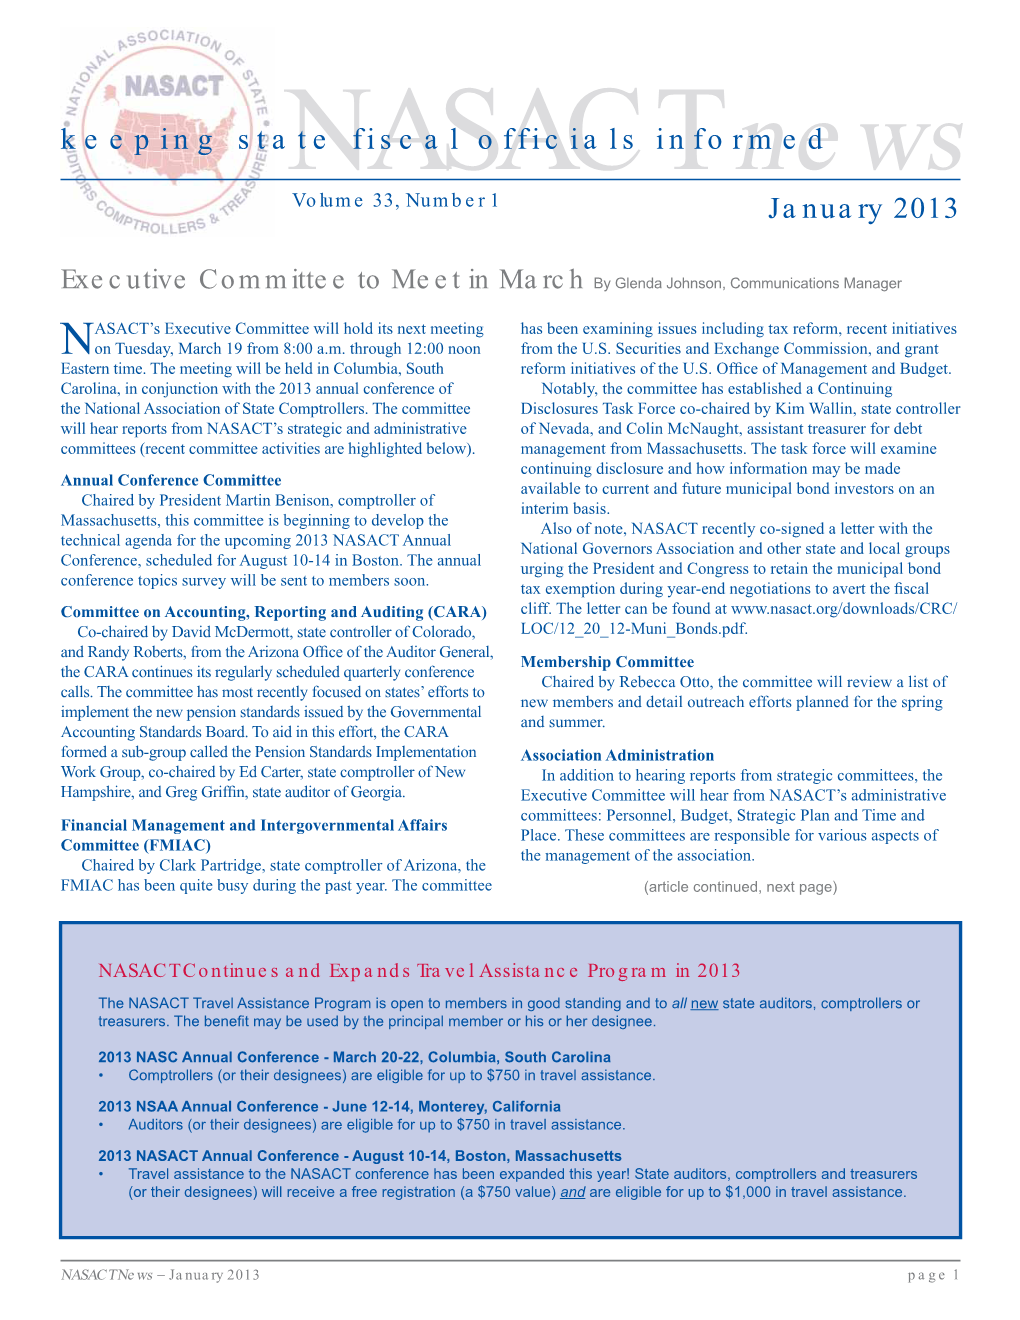 NASACT News, January 2013